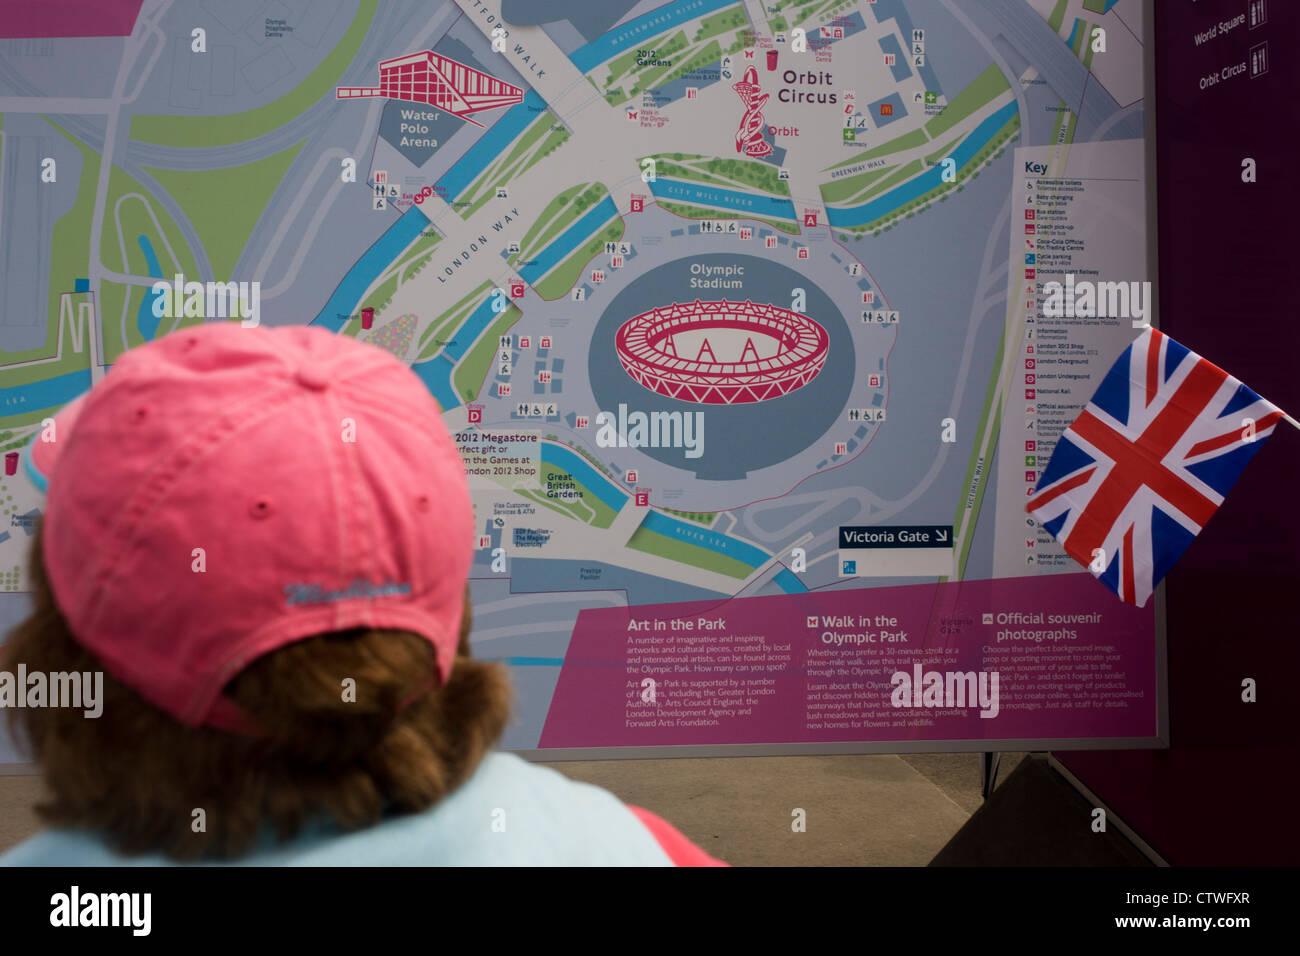 Zuschauer finden Sie eine detaillierte Karte des Olympiaparks während der Olympischen Spiele 2012 in London. Dieses Land wurde umgestaltet, um eine 2,5 qkm sportliche Komplex, einmal Industriebetriebe und nun Austragungsort der acht Orte, darunter die Hauptarena Aquatics Centre und Velodrom sowie der Athleten Olympisches Dorf werden. Nach den Olympischen Spielen ist der Park als Queen Elizabeth Olympic Park bekannt. Stockfoto